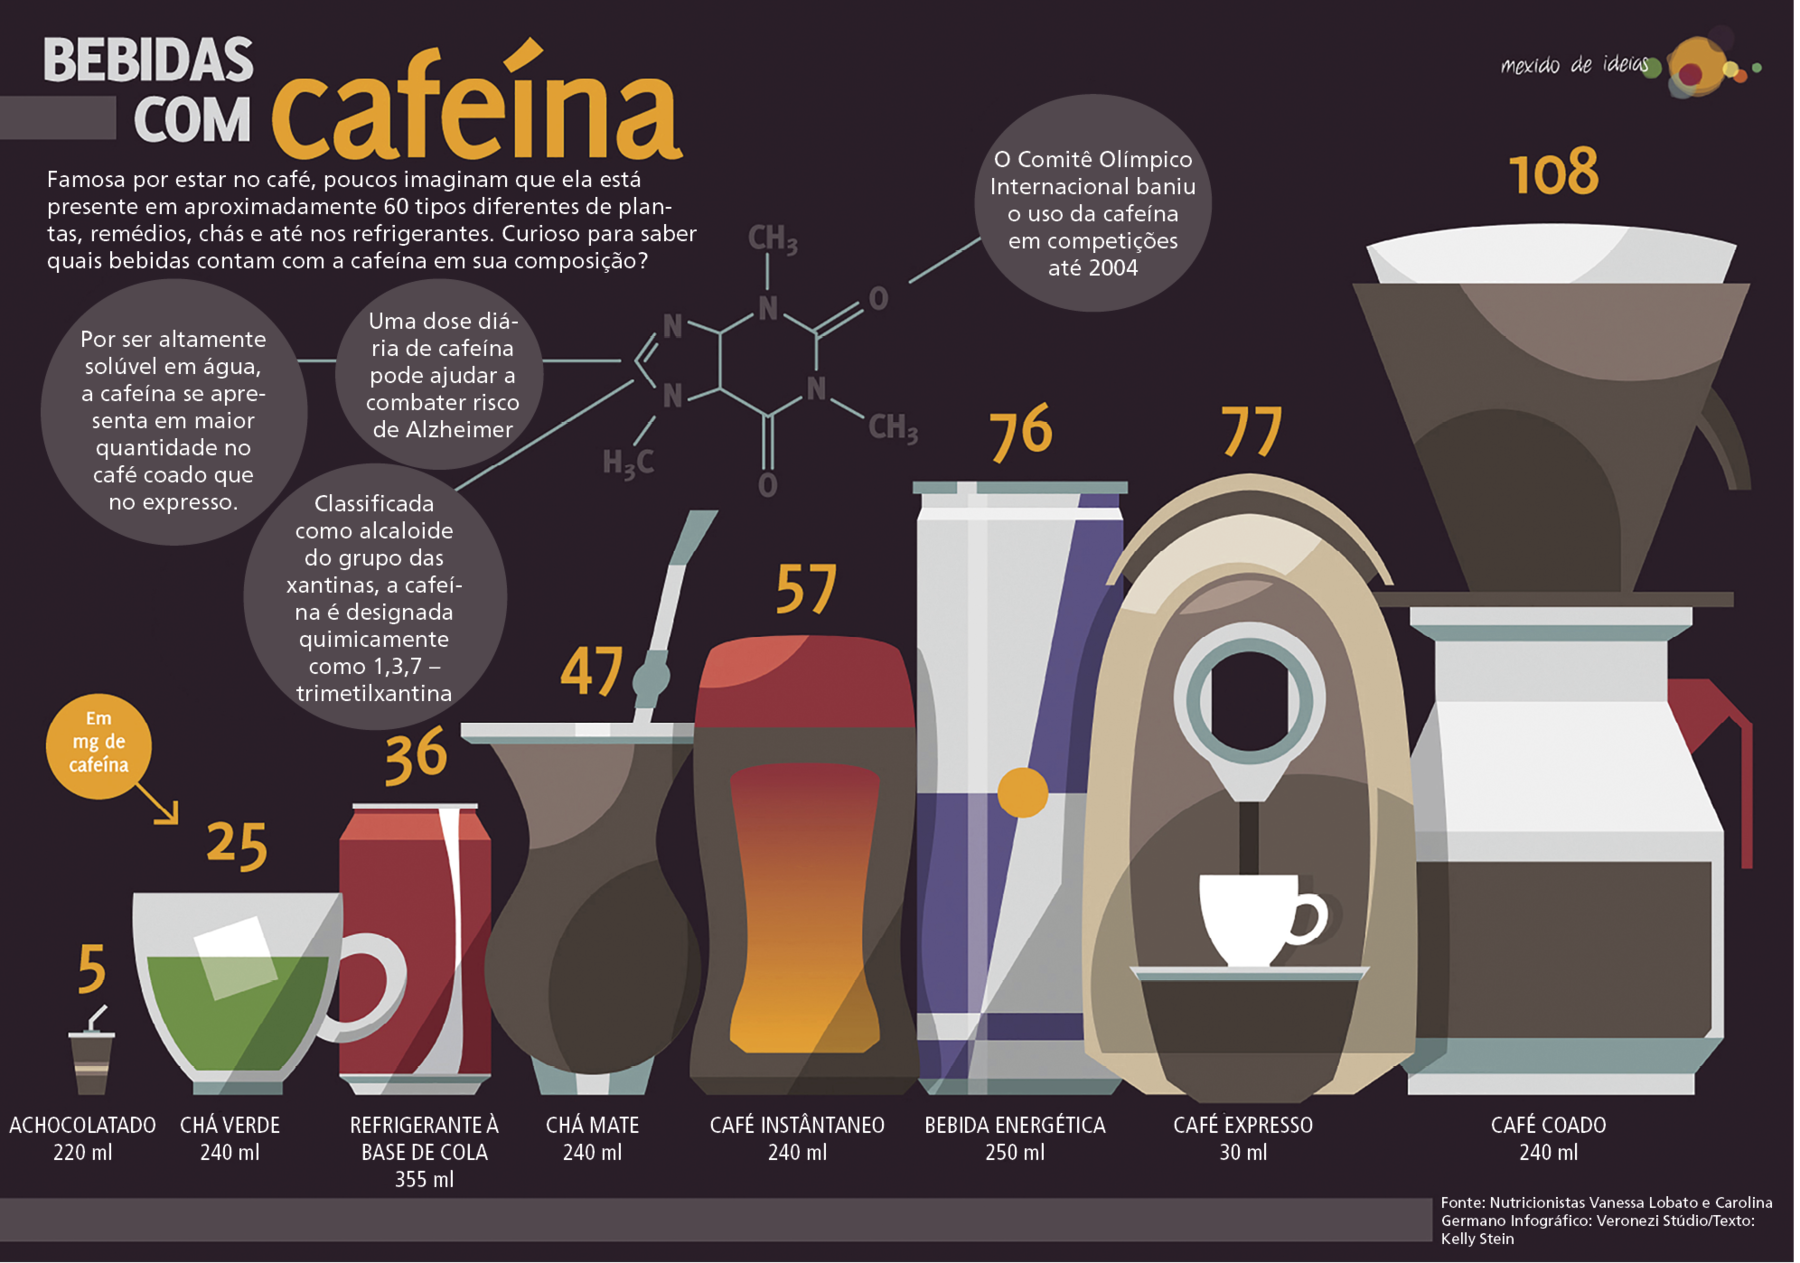 Infográfico. Apresenta-se sobre um fundo marrom escuro. Na parte superior, o texto: BEBIDAS COM cafeína. Famosa por estar no café, poucos imaginam que está presente em aproximadamente 60 tipos diferentes de plantas, remédios, chás e até nos refrigerantes. Curioso para saber quais bebidas contam com a cafeína em sua composição? Abaixo, apresentação da fórmula química molecular da cafeína:  C8H10N4O2. Ao redor da fórmula, quatro  círculos com os textos:  Por ser altamente solúvel em água, a cafeína se apresenta em maior quantidade no café coado que no expresso. Uma dose diária de cafeína pode ajudar a combater risco de Alzheimer. Classificada como alcaloide do grupo das xantinas, a cafeína é designada quimicamente como 1,3,7 – trimetilxantina. O Comitê Olímpico Internacional baniu o uso da cafeína em competições até 2004. Na parte inferior, oito ilustrações de bebidas com café, uma ao lado da outra: um copo com ACHOCOLATADO, com 220 ml, tem 5 mg de cafeína. Uma xícara de CHÁ VERDE, com 240 ml, tem 25 mg de cafeína. Uma lata de REFRIGERANTE À BASE DE COLA, com 355 ml, tem 36 mg de cafeína. Uma cuia  de CHÁ MATE, com 240 ml, tem 47 mg de cafeína.  Um pote de CAFÉ INSTÂNTANEO, com 240 ml, tem 57 mg de cafeína. Uma lata de BEBIDA ENERGÉTICA, com 250 ml, tem 76 mg de cafeína. Uma máquina com uma xícara de CAFÉ EXPRESSO, com 30 ml, tem 77 mg de cafeína. Um coador sobre uma jarra de CAFÉ COADO, com 240 ml, tem 108 mg de cafeína.